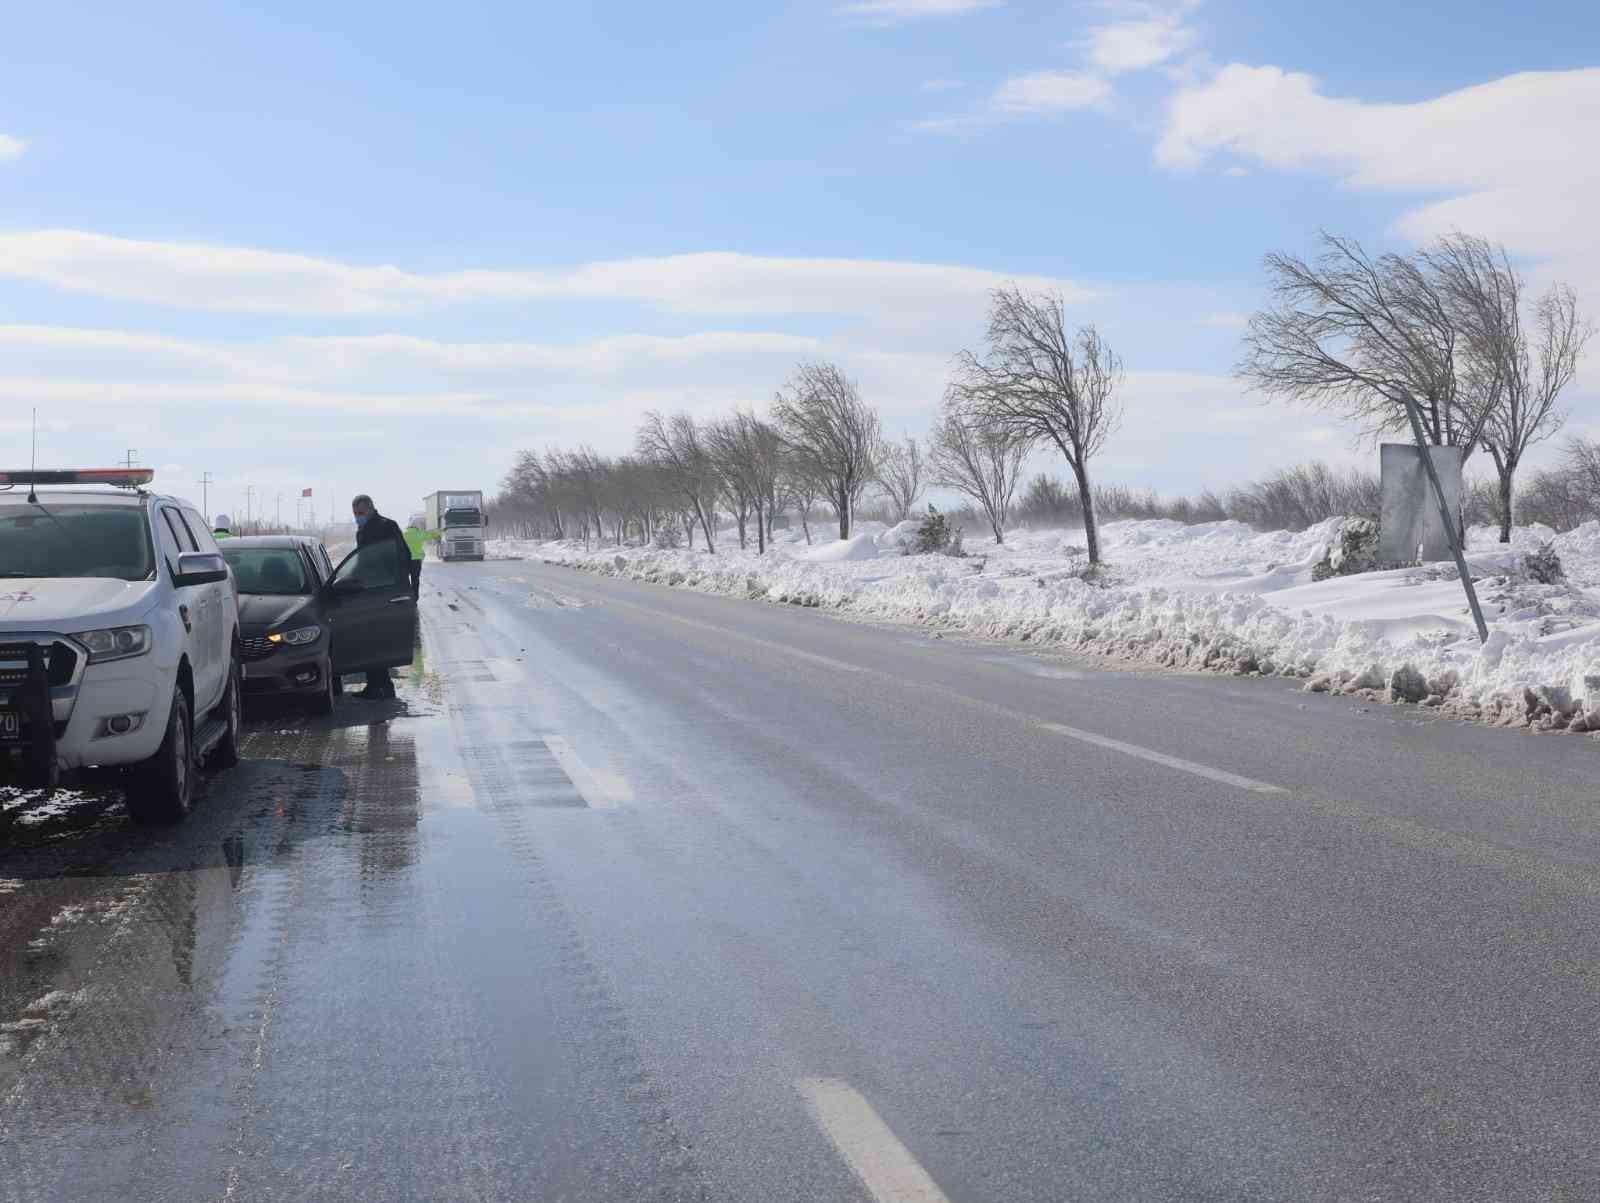 Konya’nın kapalı olan tüm şehirler arası yolları ulaşıma açıldı #konya